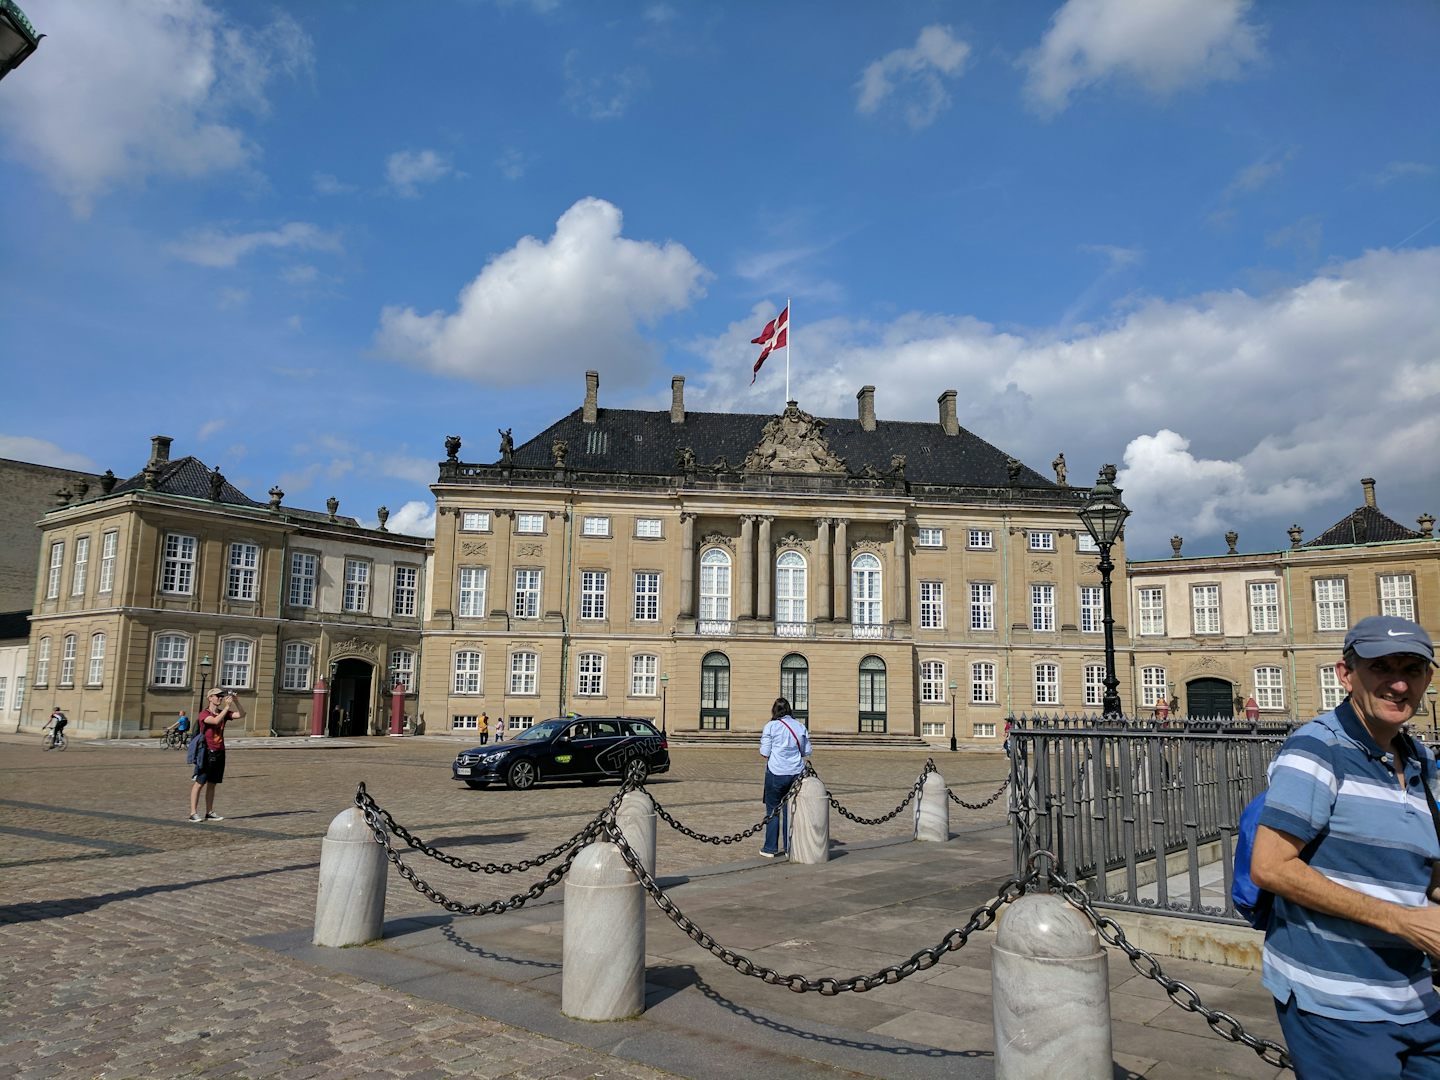 Copenhagen Amelienberg (Queen's Palace)